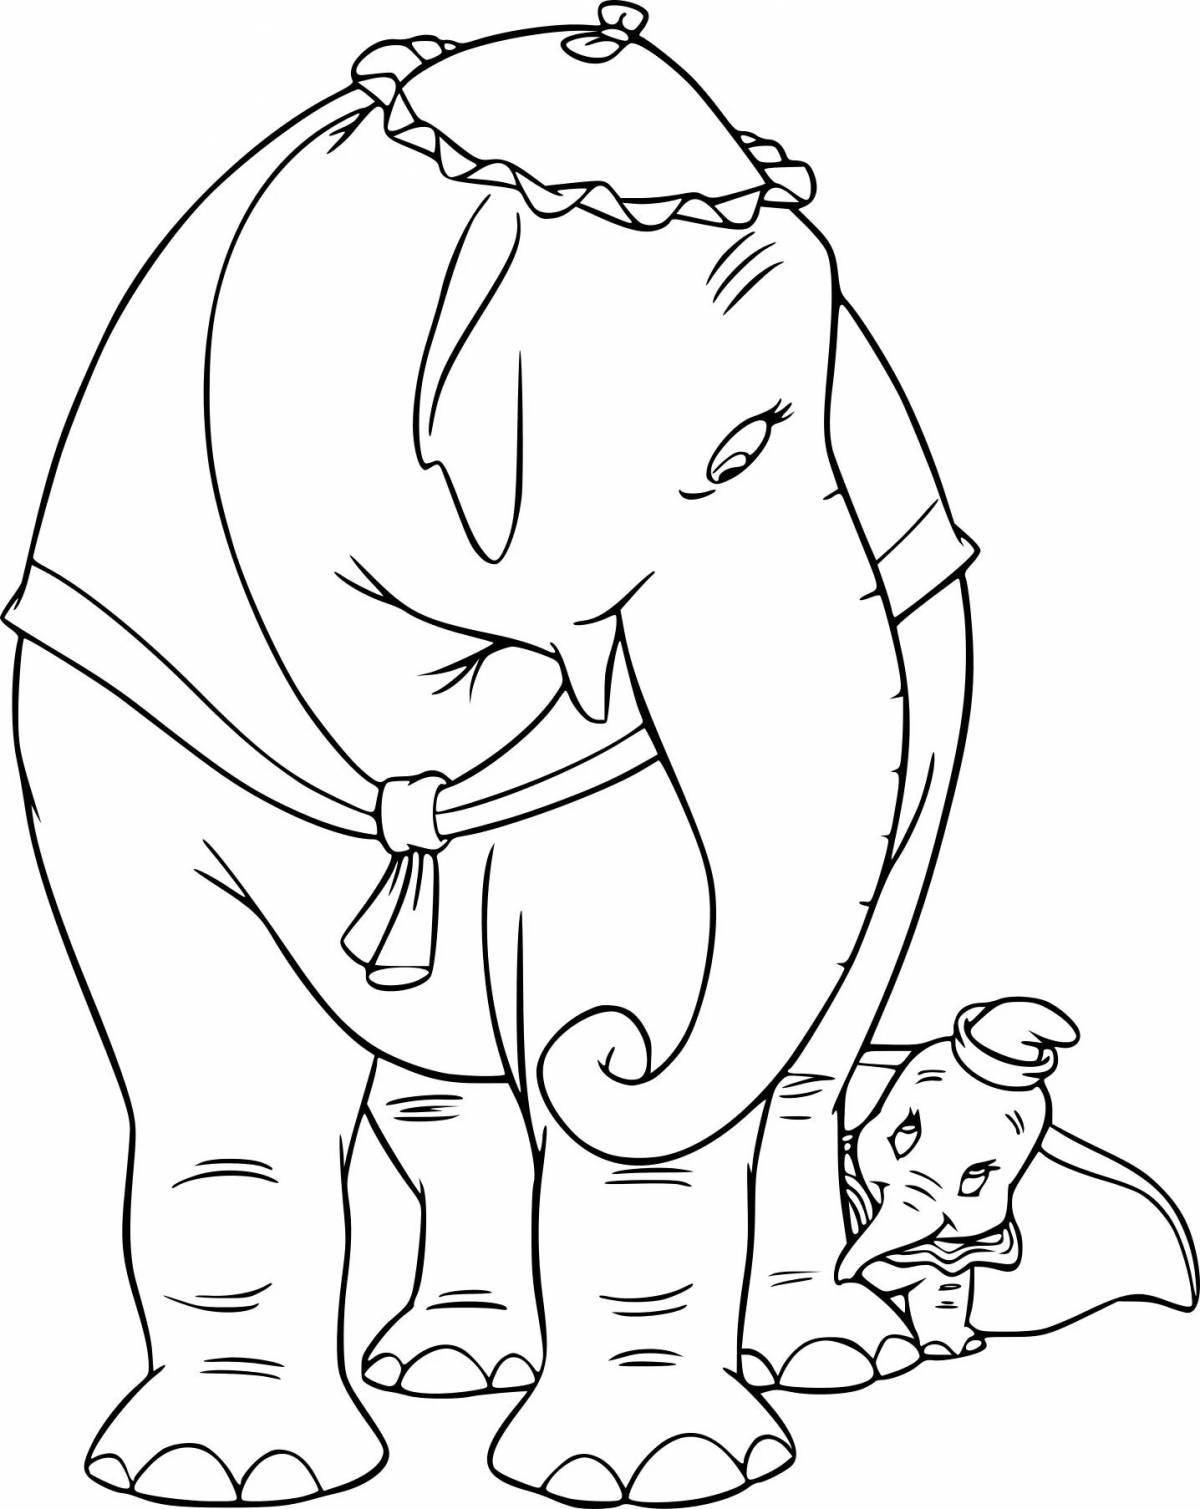 Великолепная раскраска история слона куприна